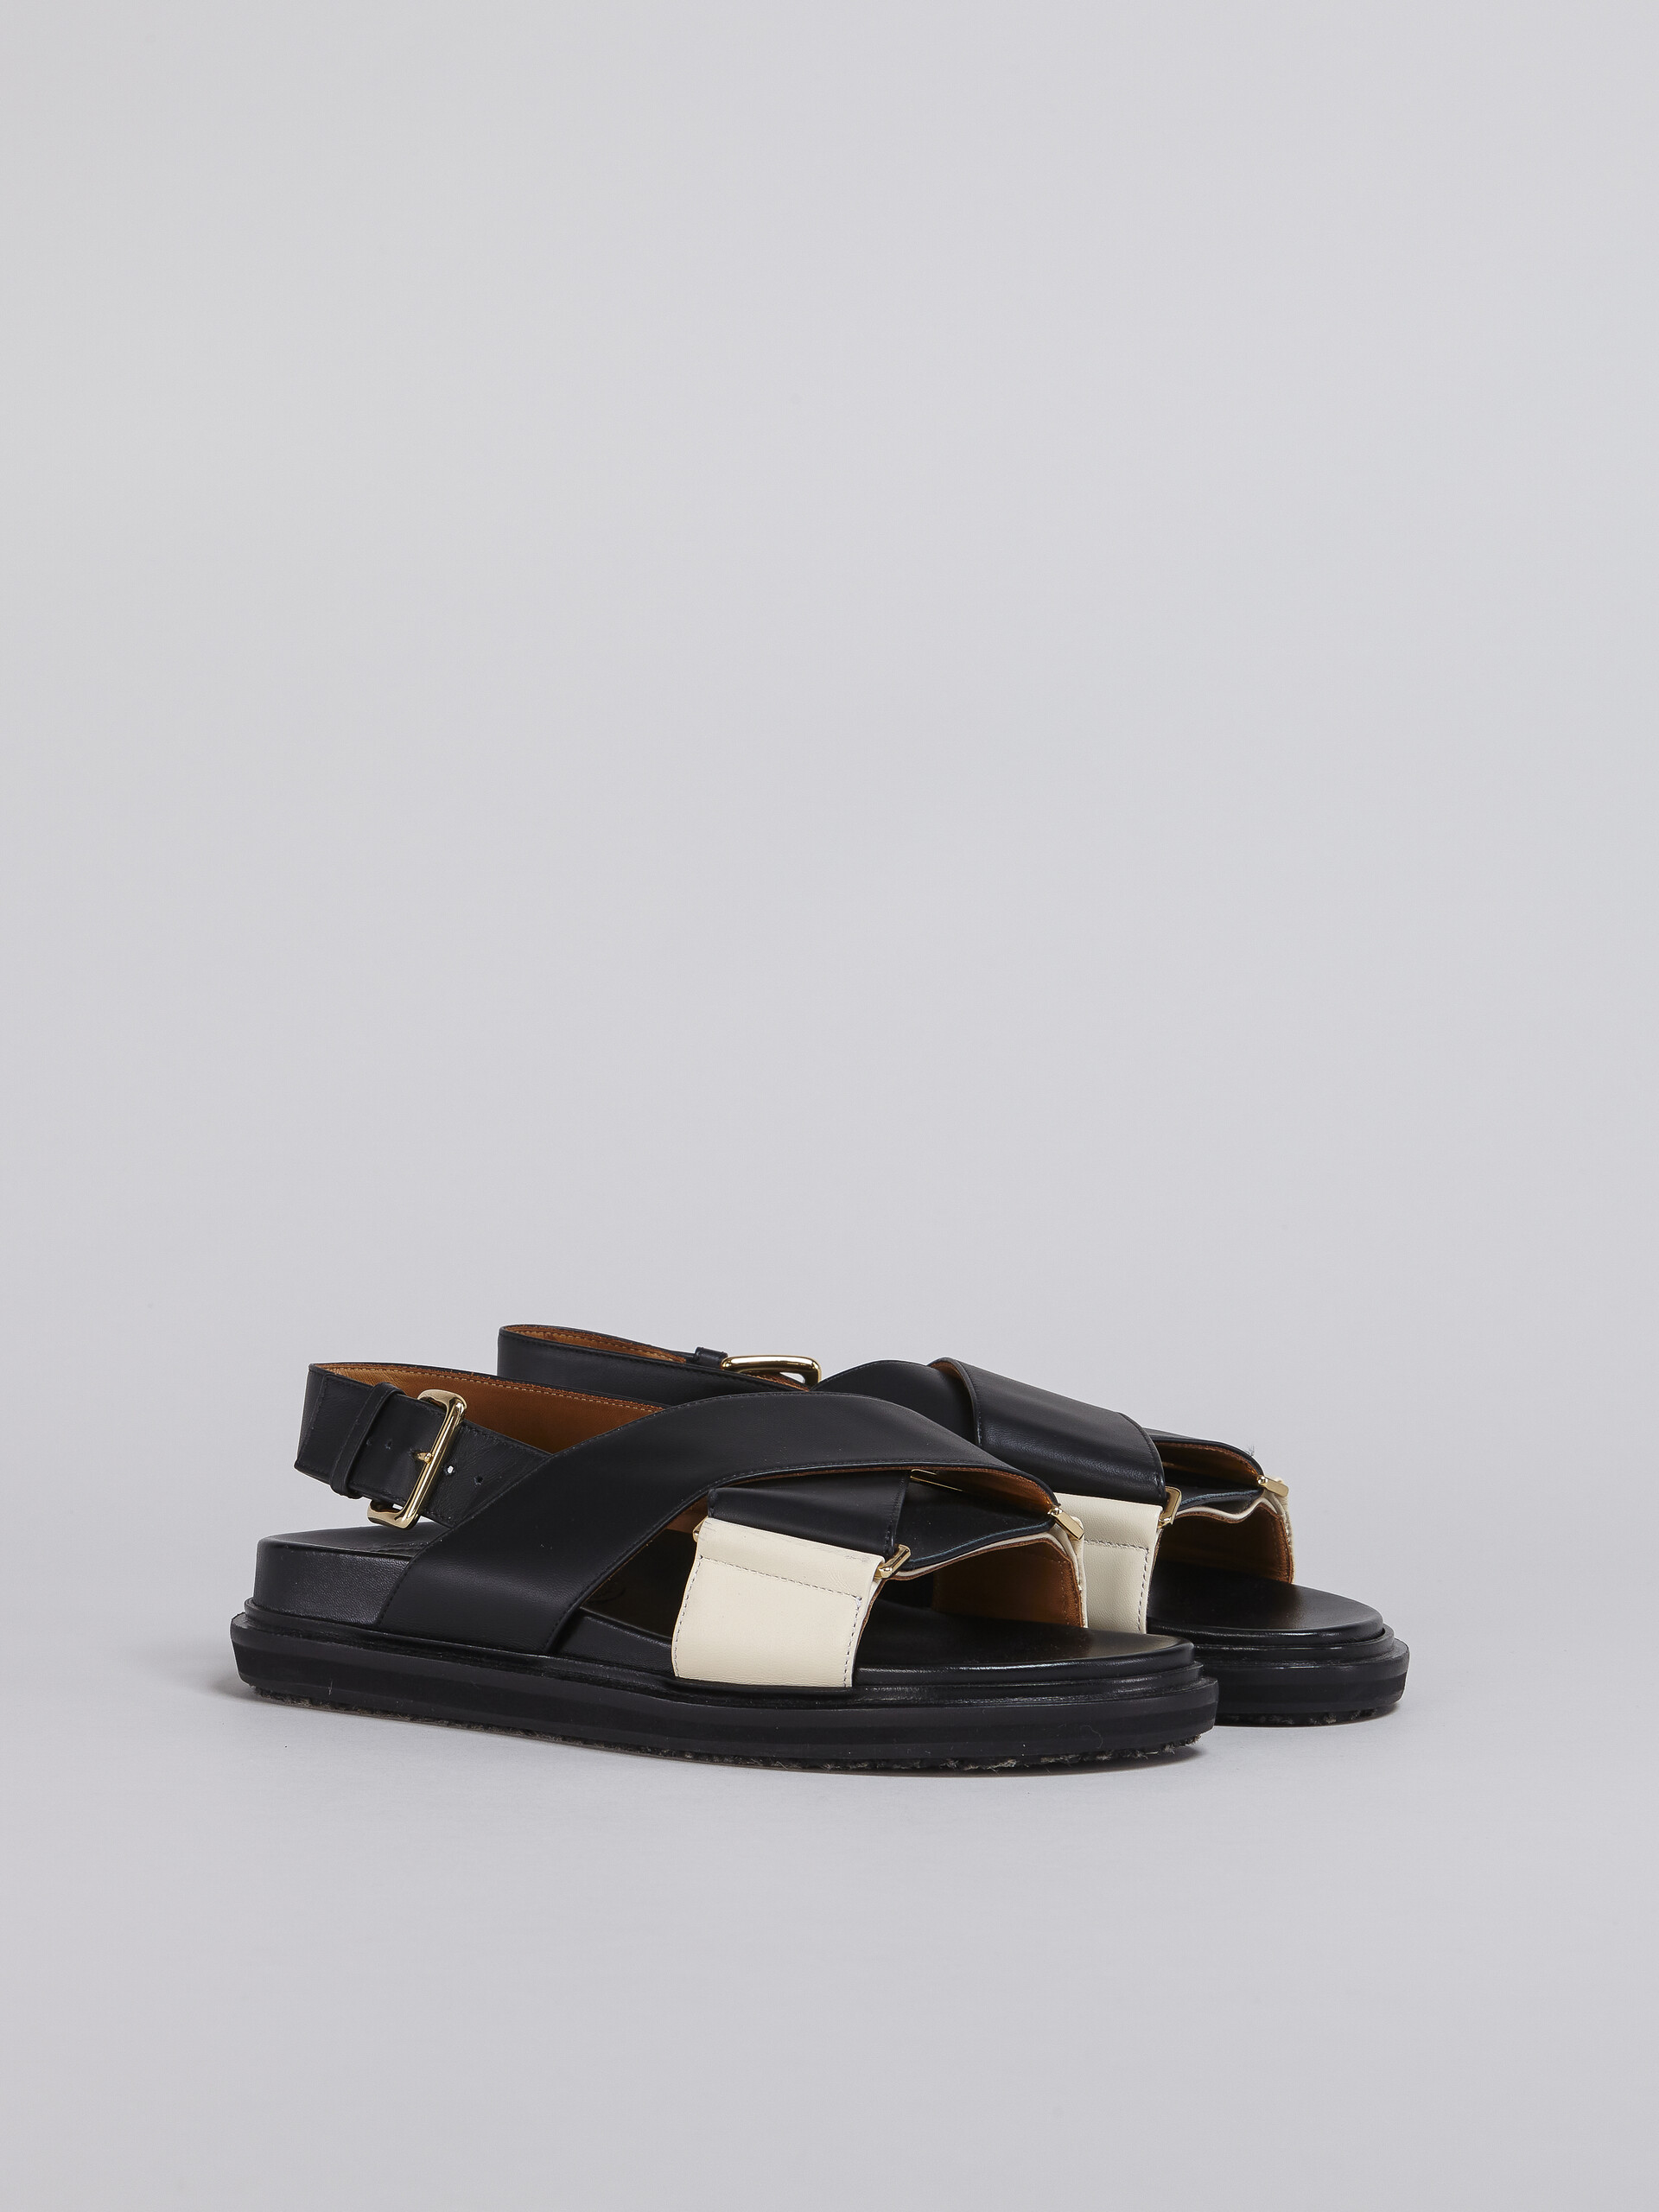 Sandales Fussbett en cuir noir et blanc - Sandales - Image 2